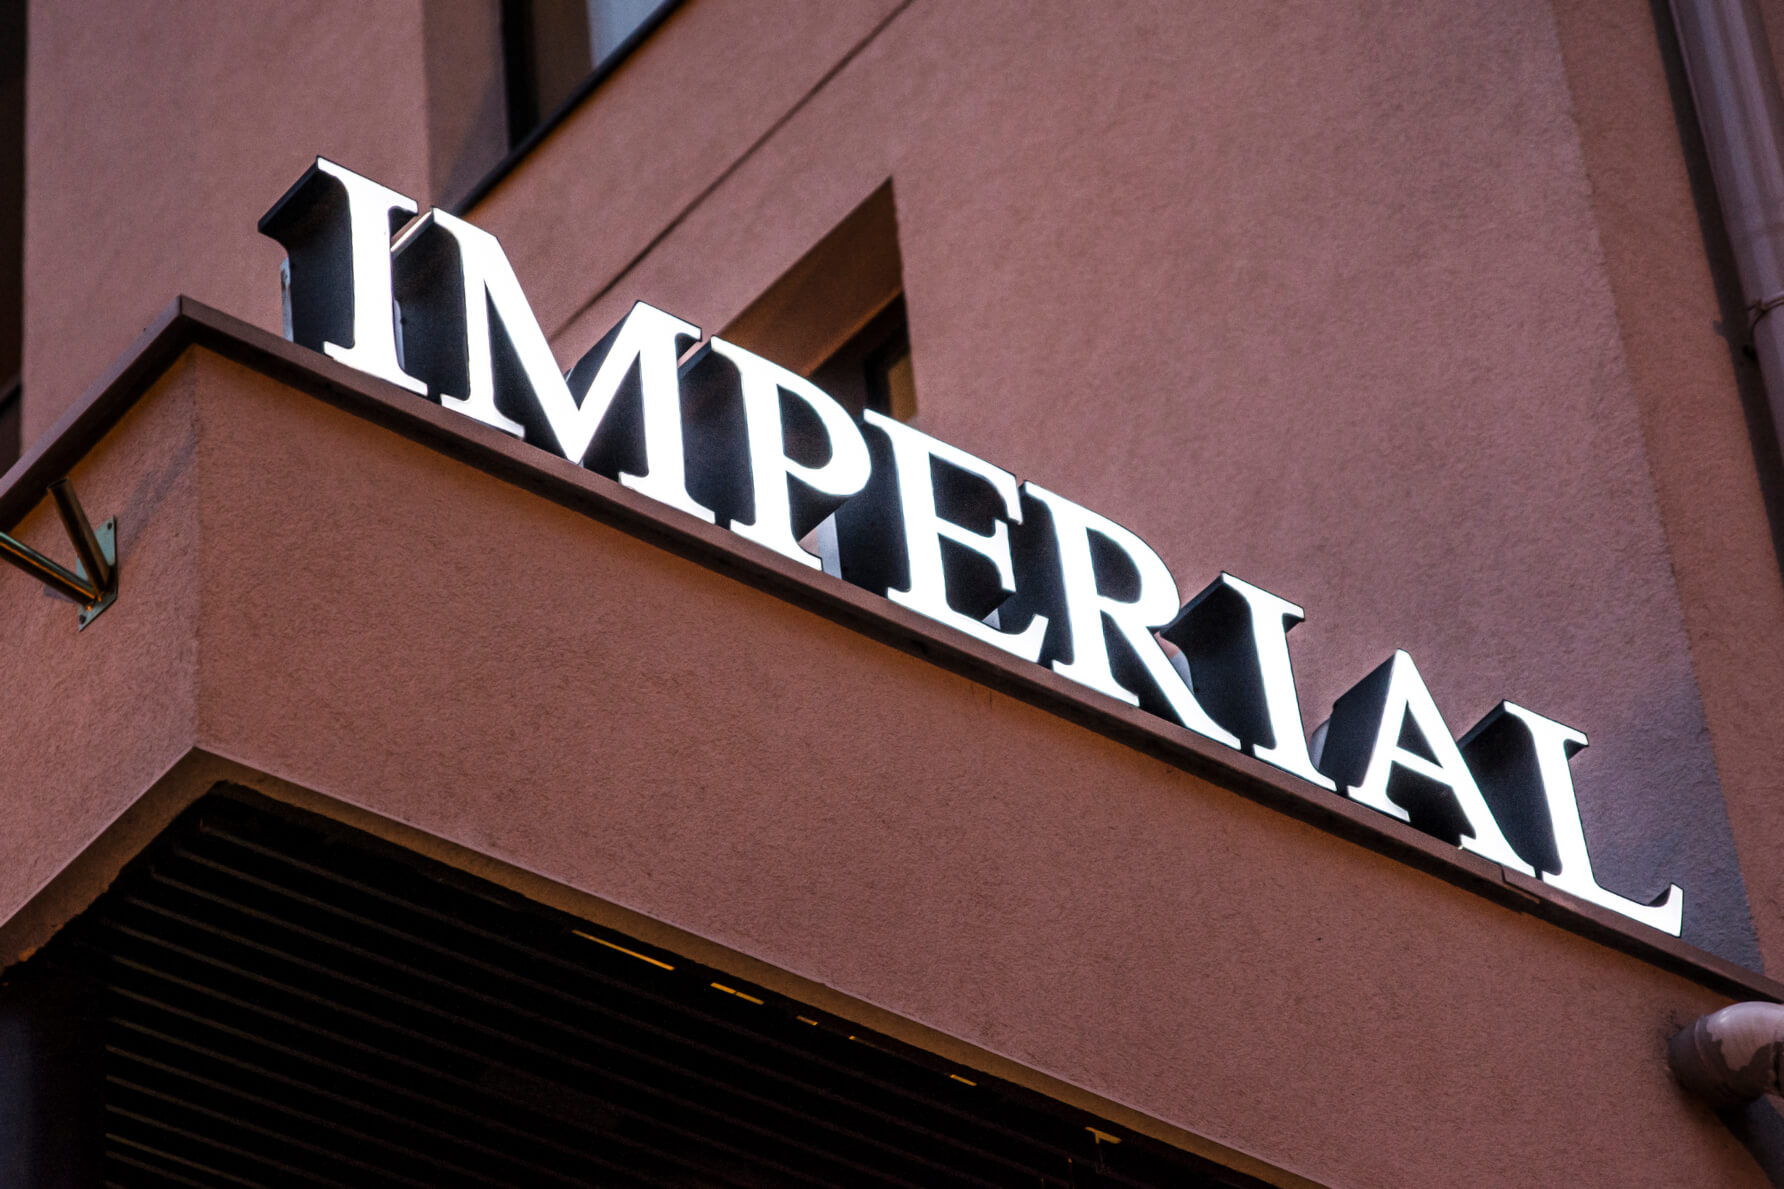 Imperial - Hotel Imperial - scritte spaziali a LED sulla parete